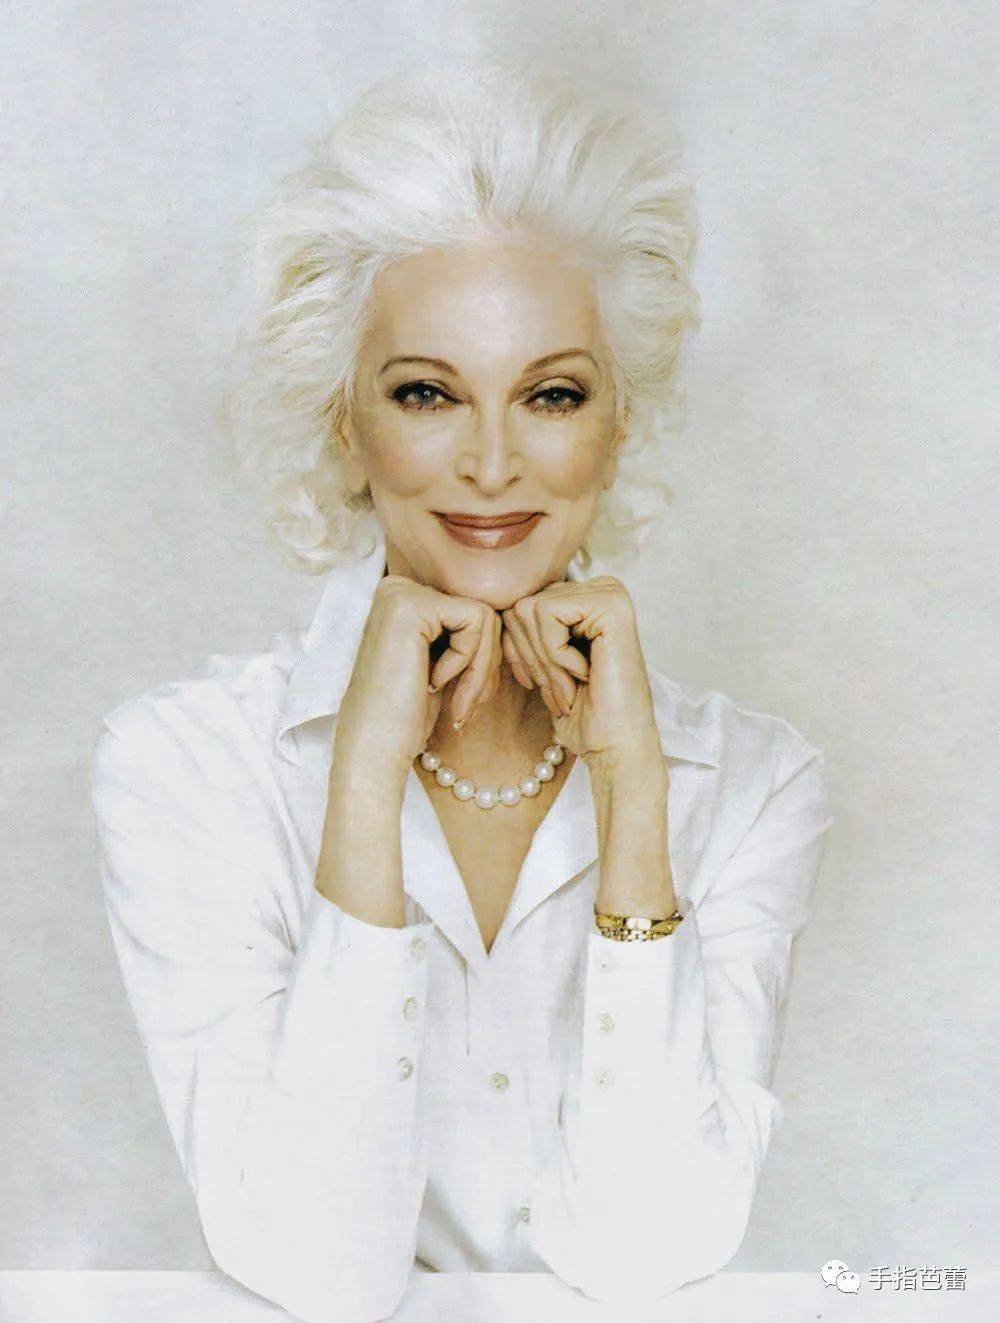 世界最长寿模特参加时装周一头白发美艳绝伦89岁仍锻炼身体